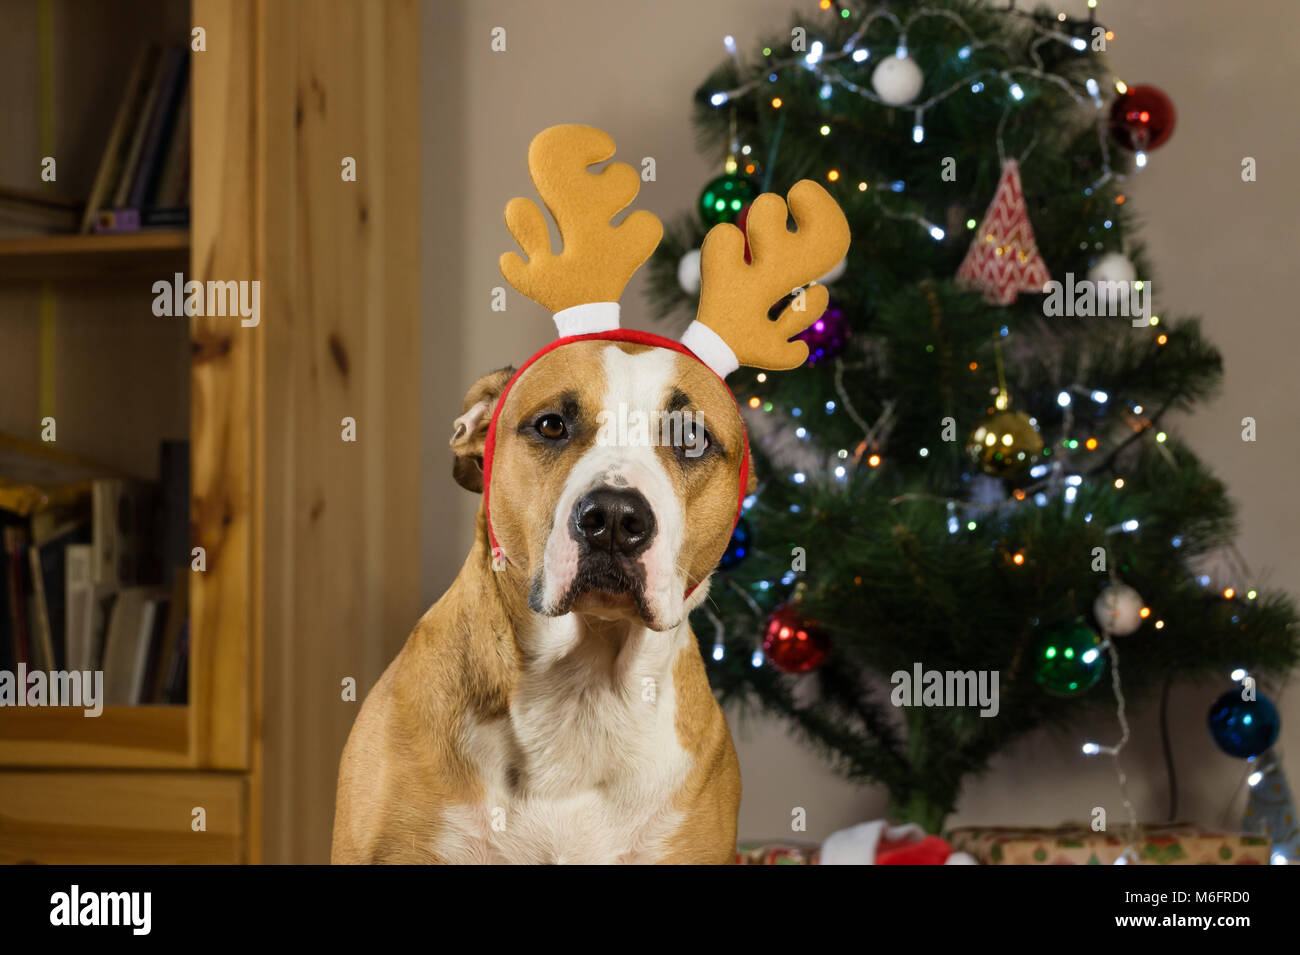 Hund mit Rudolf das Rentier Hut sitzt vor dekoriert Fell Baum und verpackte Weihnachtsgeschenke Stockfoto